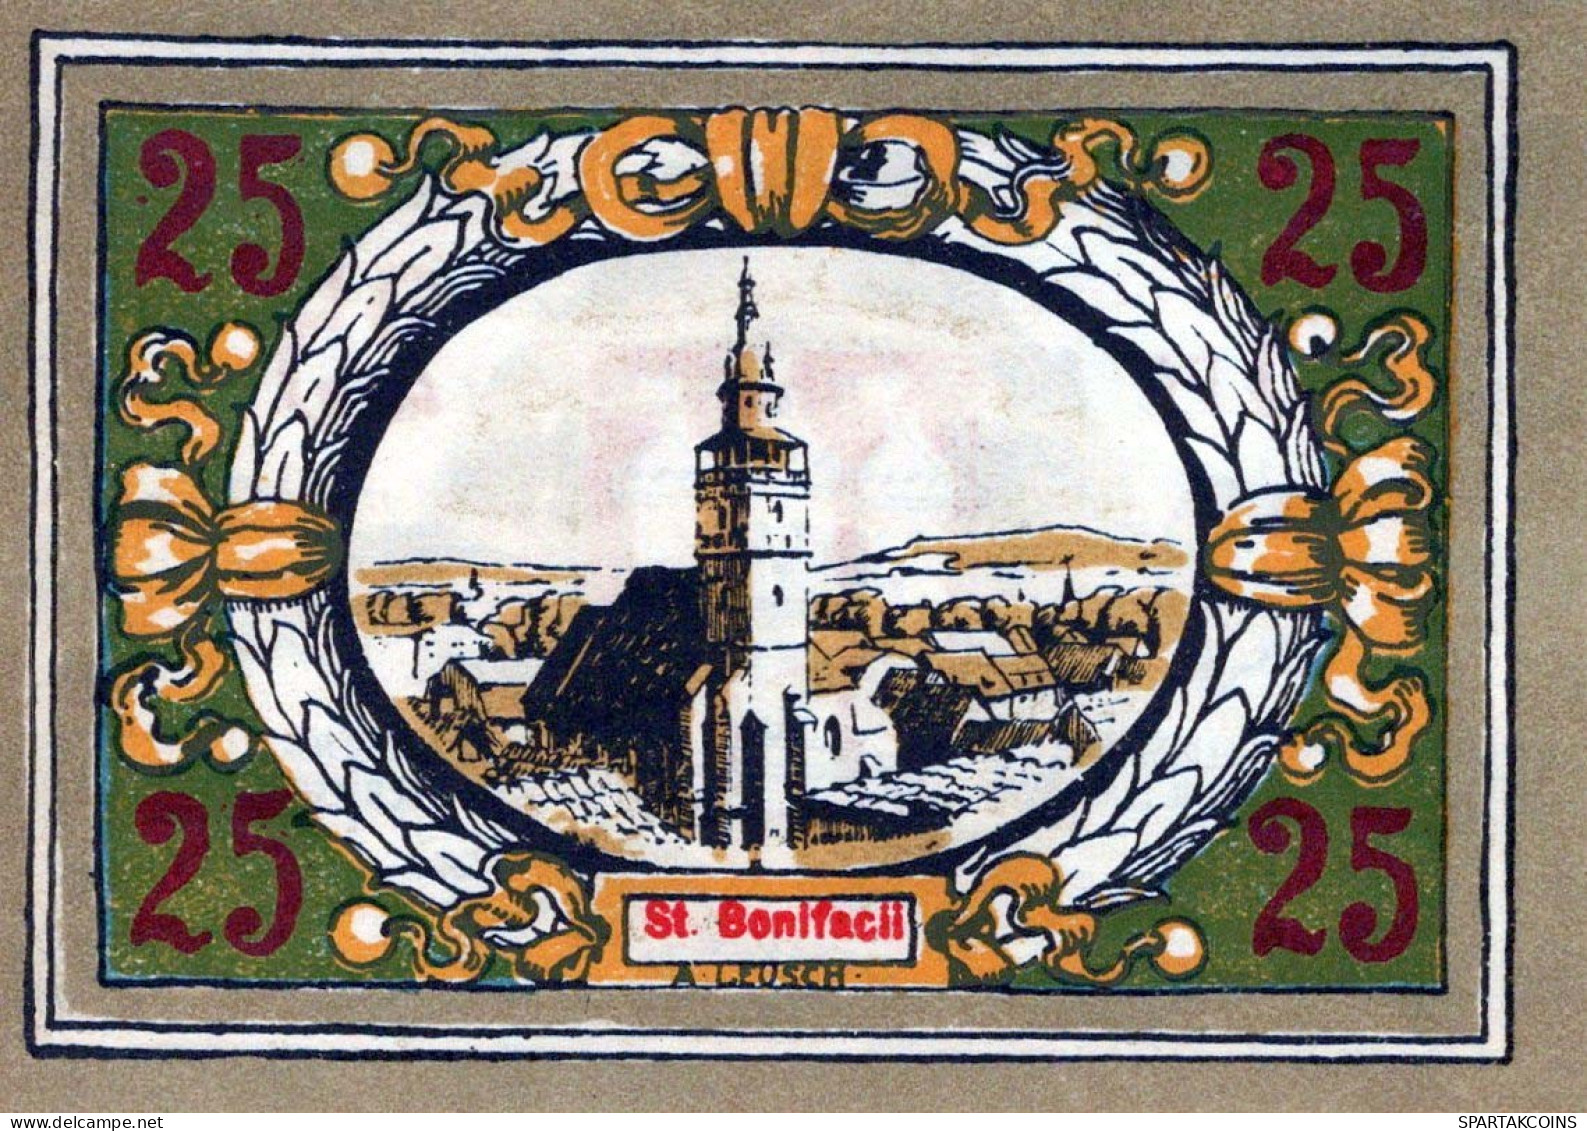 25 PFENNIG 1921 Stadt LANGENSALZA Saxony UNC DEUTSCHLAND Notgeld Banknote #PC005 - [11] Emisiones Locales